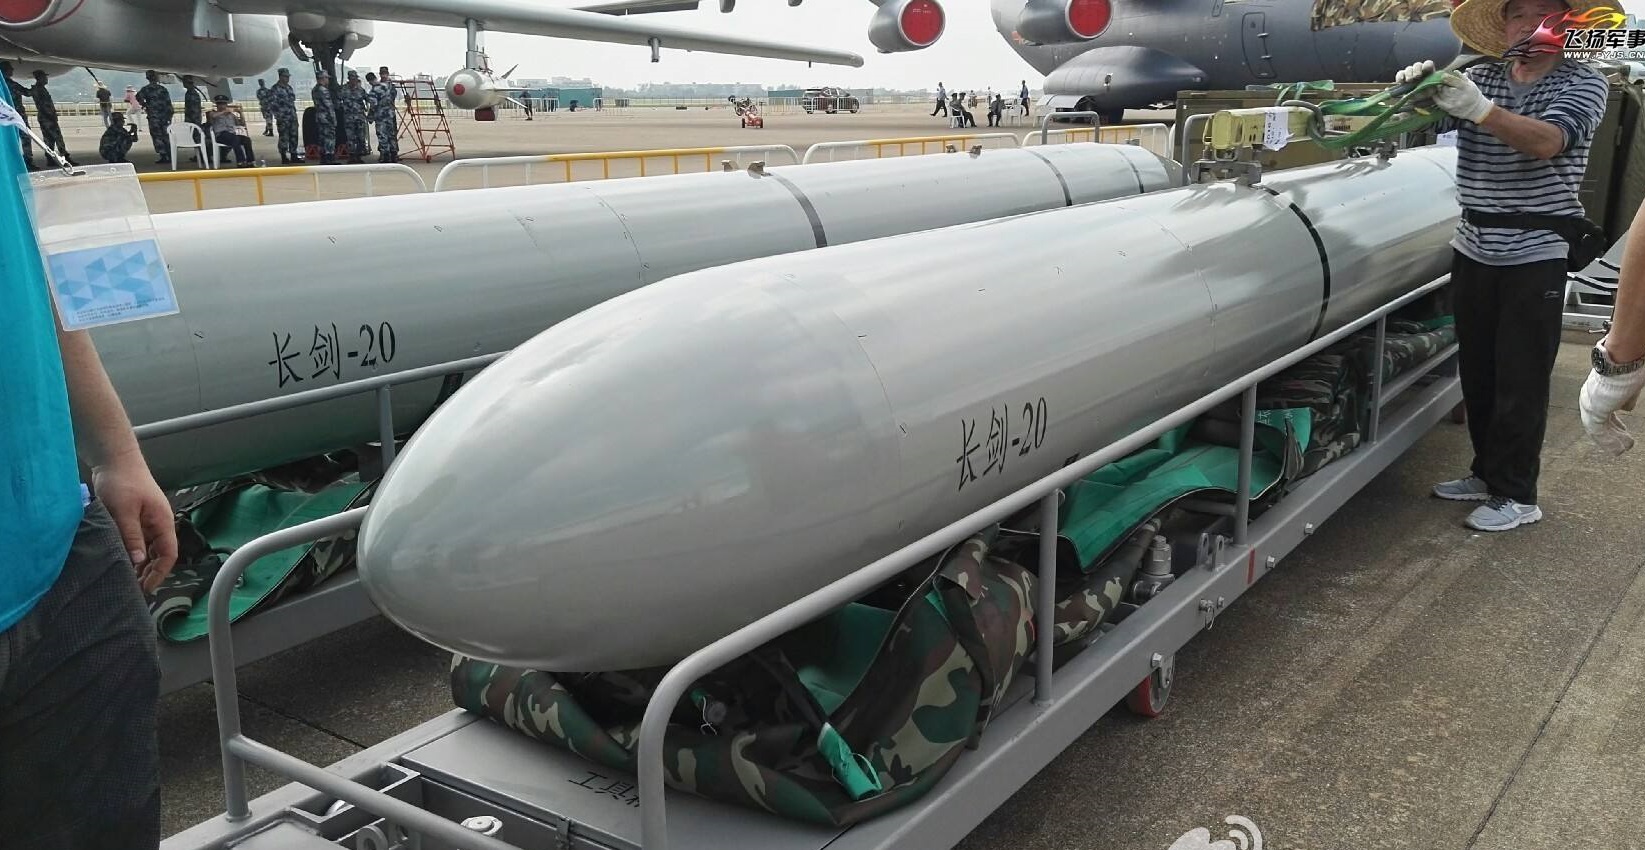 機載高超音速導彈？解放軍空軍發射新型導彈，美：無法實戰部署